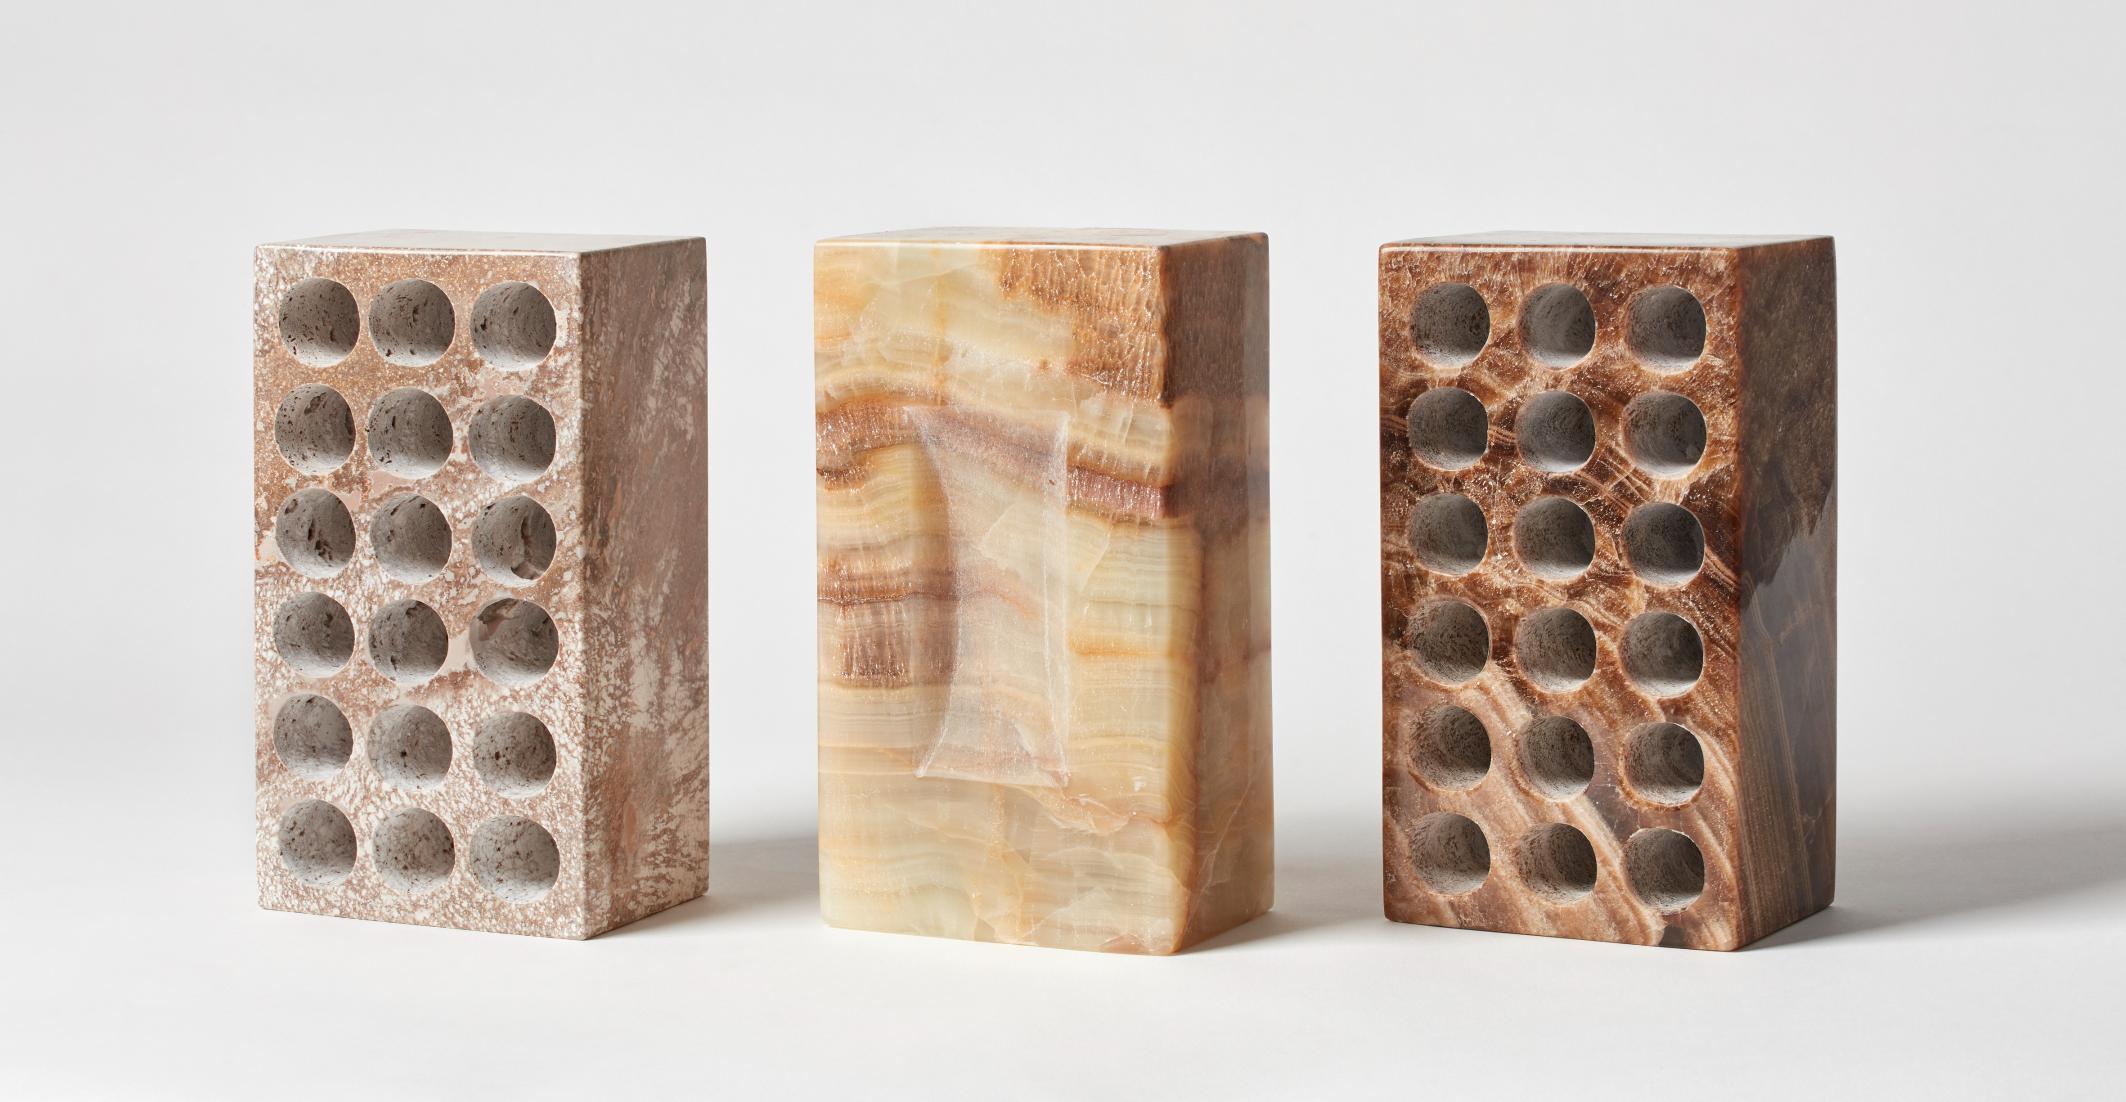 Ensemble de 3 briques par Estudio Rafael Freyre
Dimensions : L 12,5 D 9 x H 23 cm 
Matériaux : Pierres des Andes
Également disponible : Autres finitions disponibles

La brique est un élément constructif générique qui fait partie de l'imaginaire